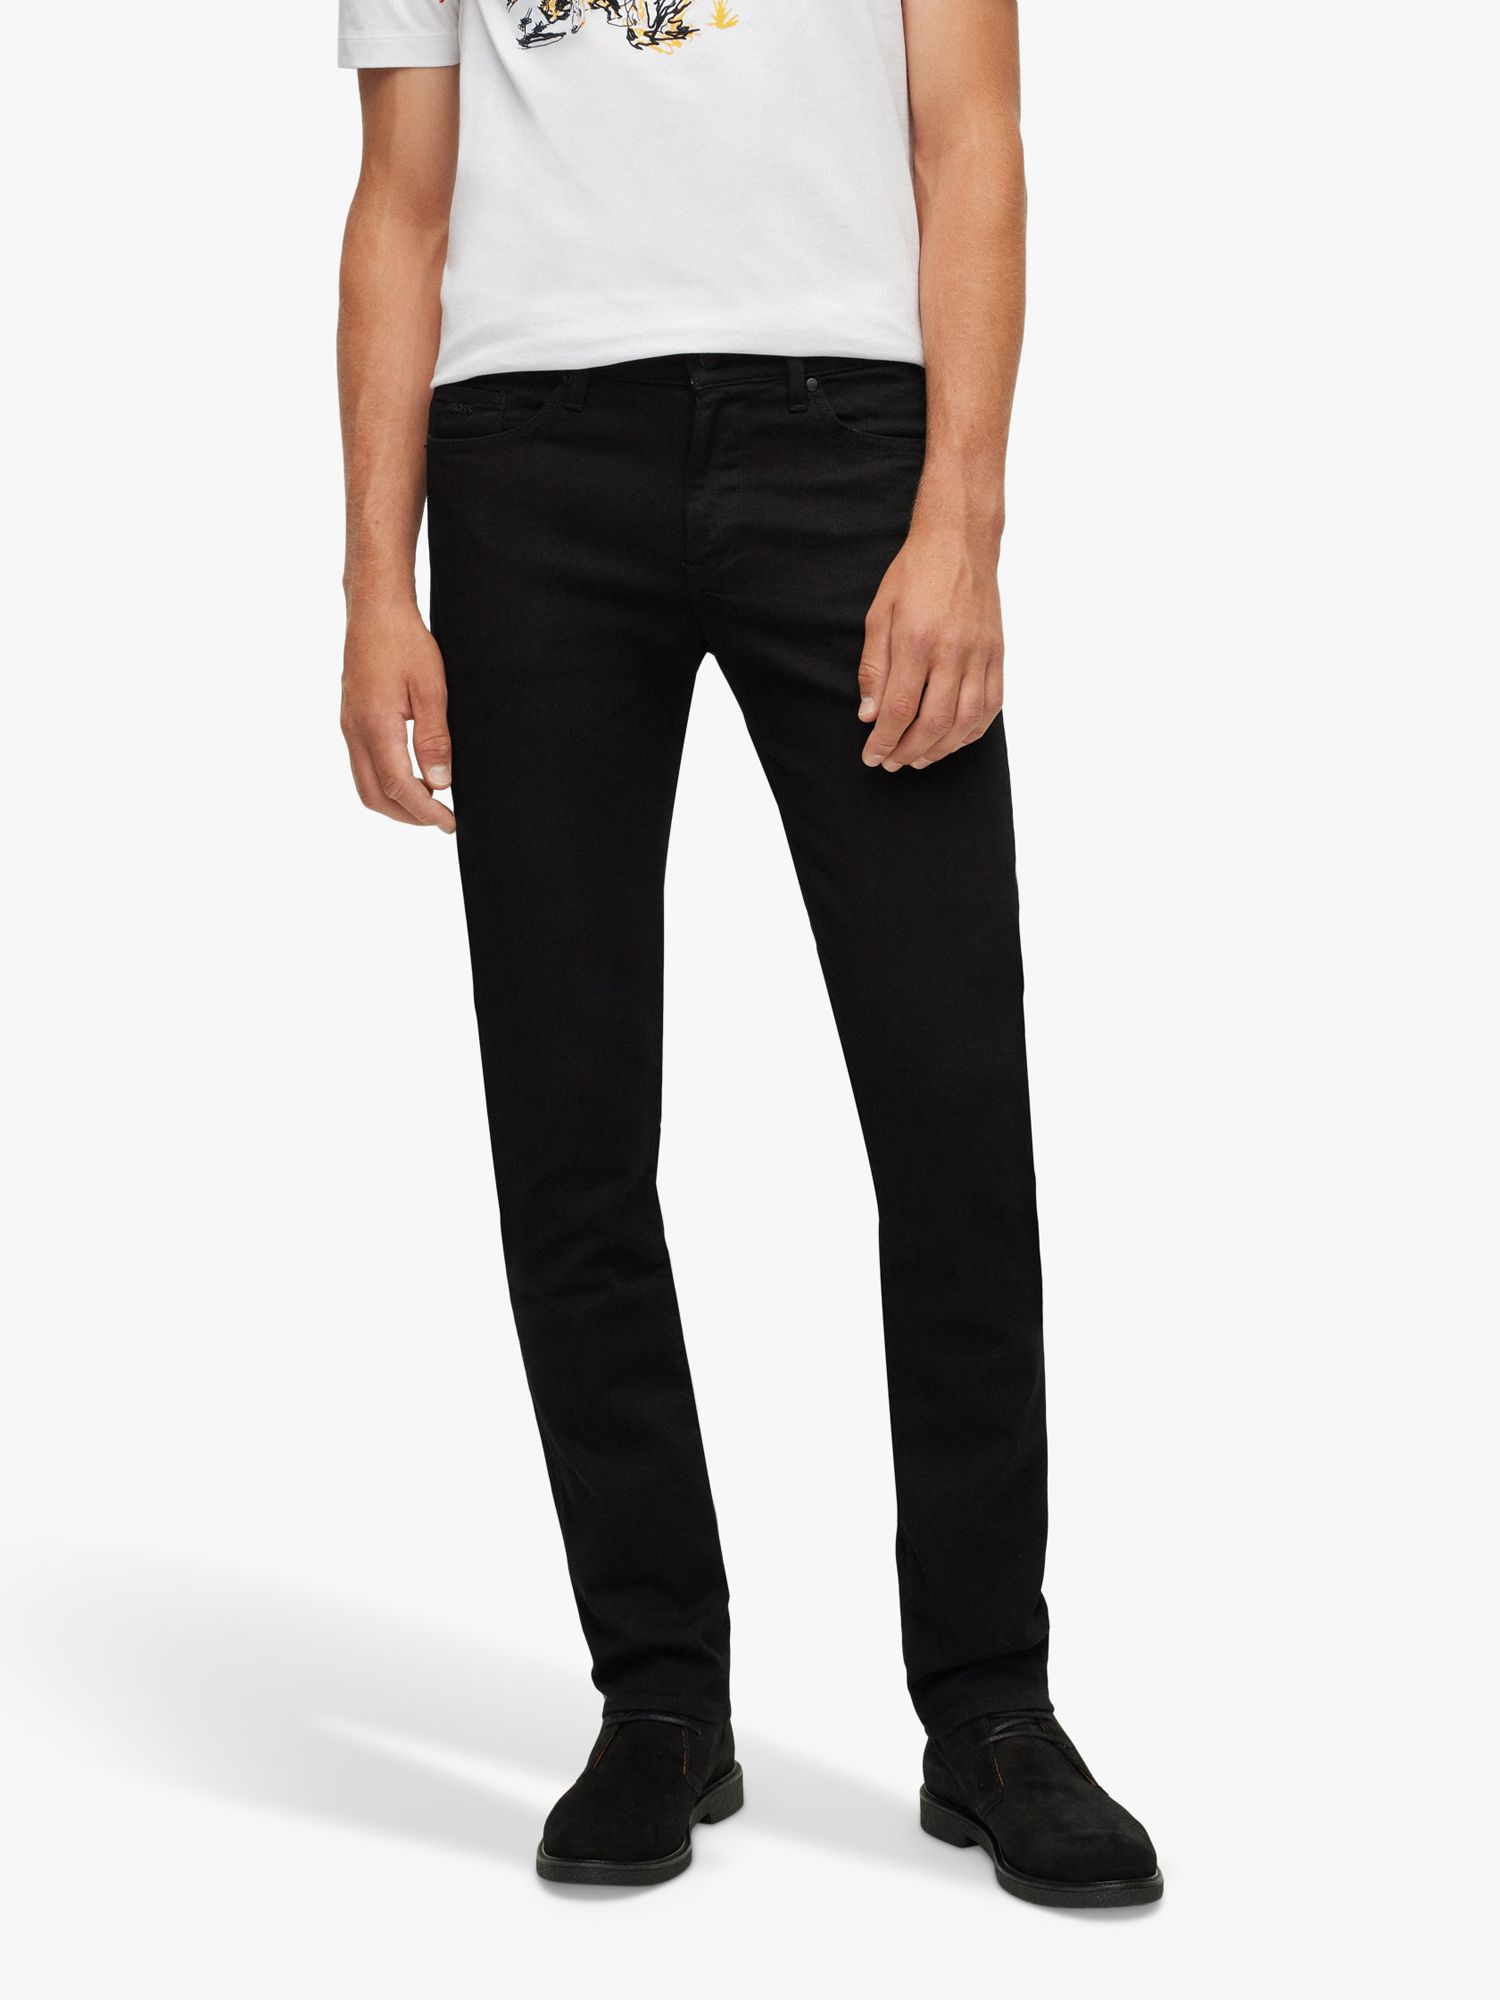 BOSS Delaware Slim Fit Jeans, Black at John Lewis & Partners